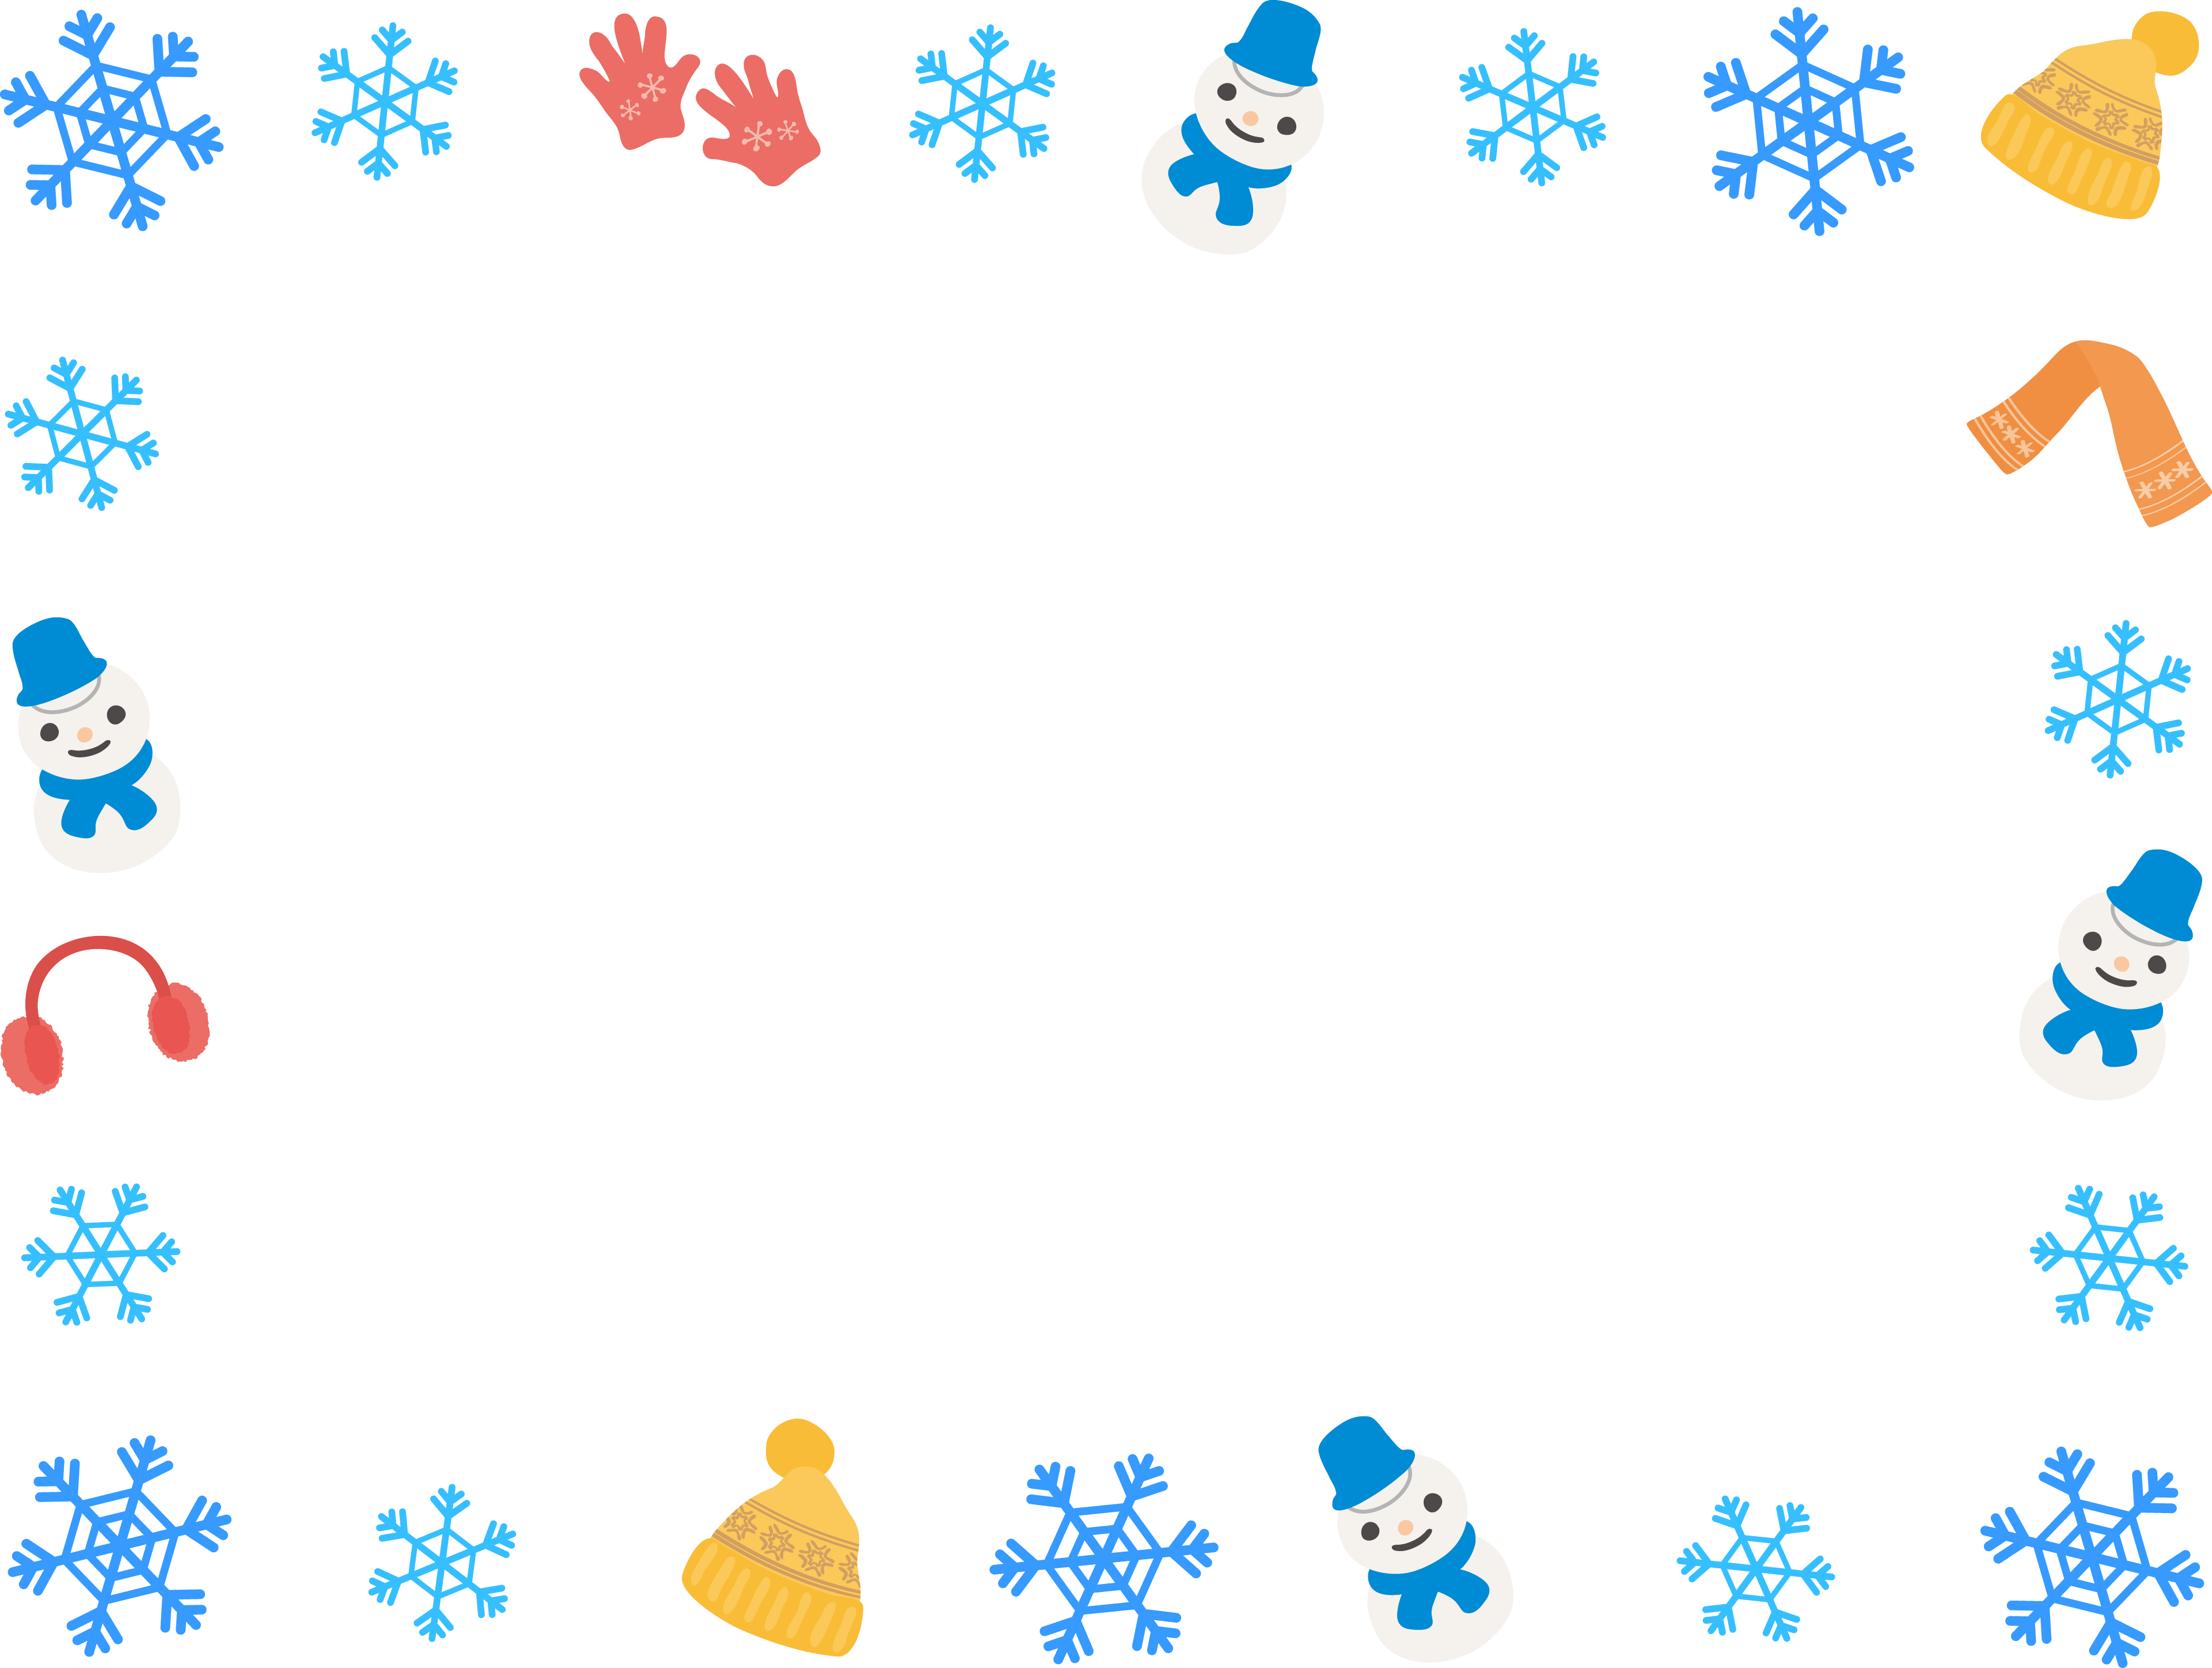 雪の結晶と冬の小物-雪だるまの囲みフレーム飾り枠